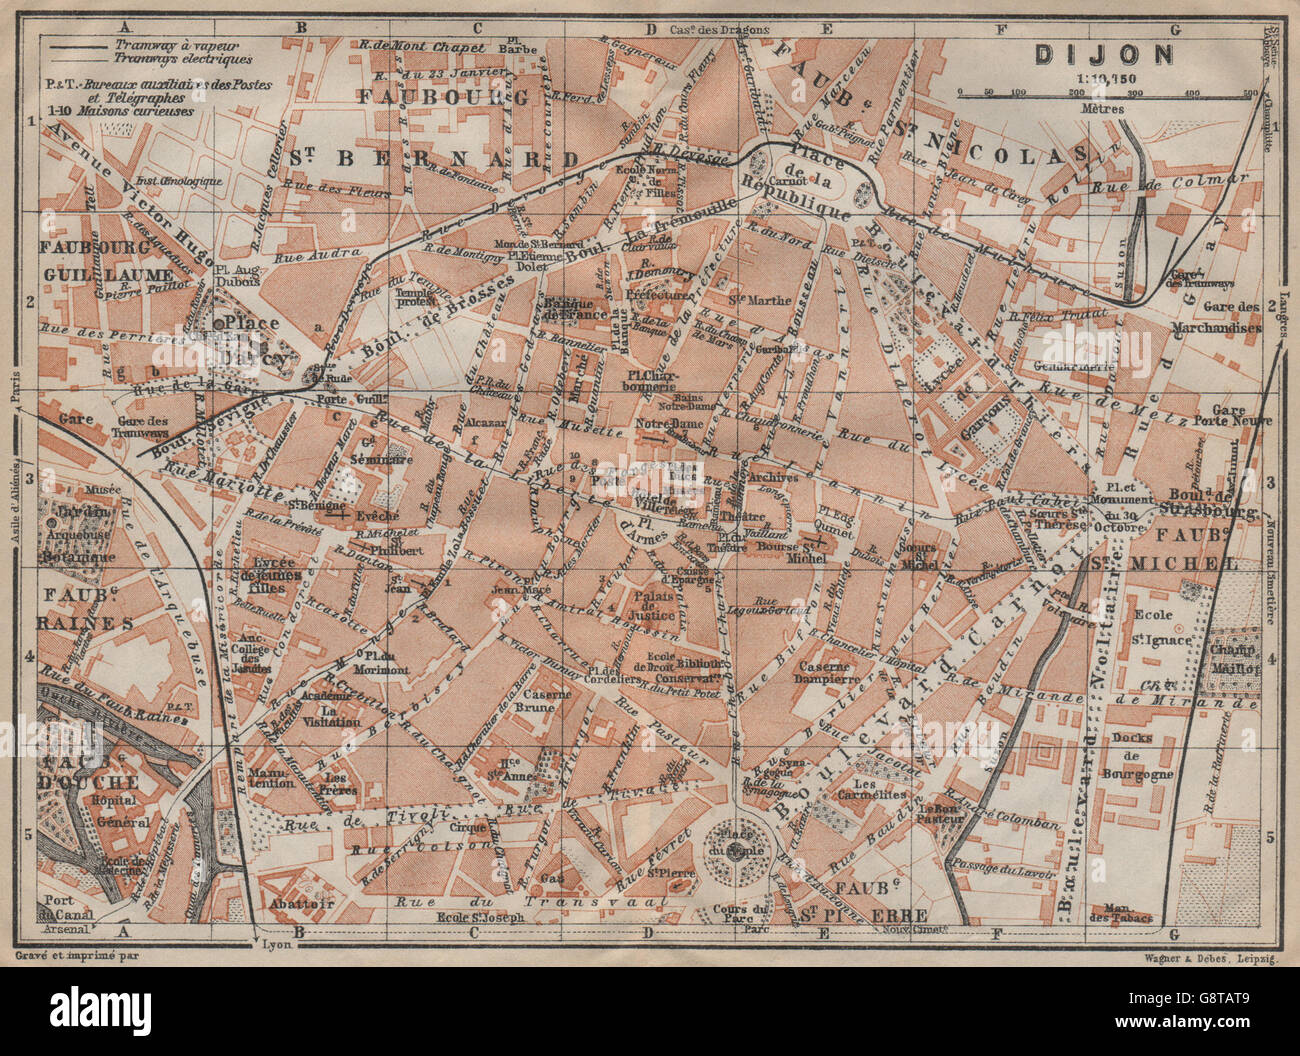 DIJON antique town city plan de la ville. Côte-d'Or. Bourgogne carte, 1909 map Stock Photo